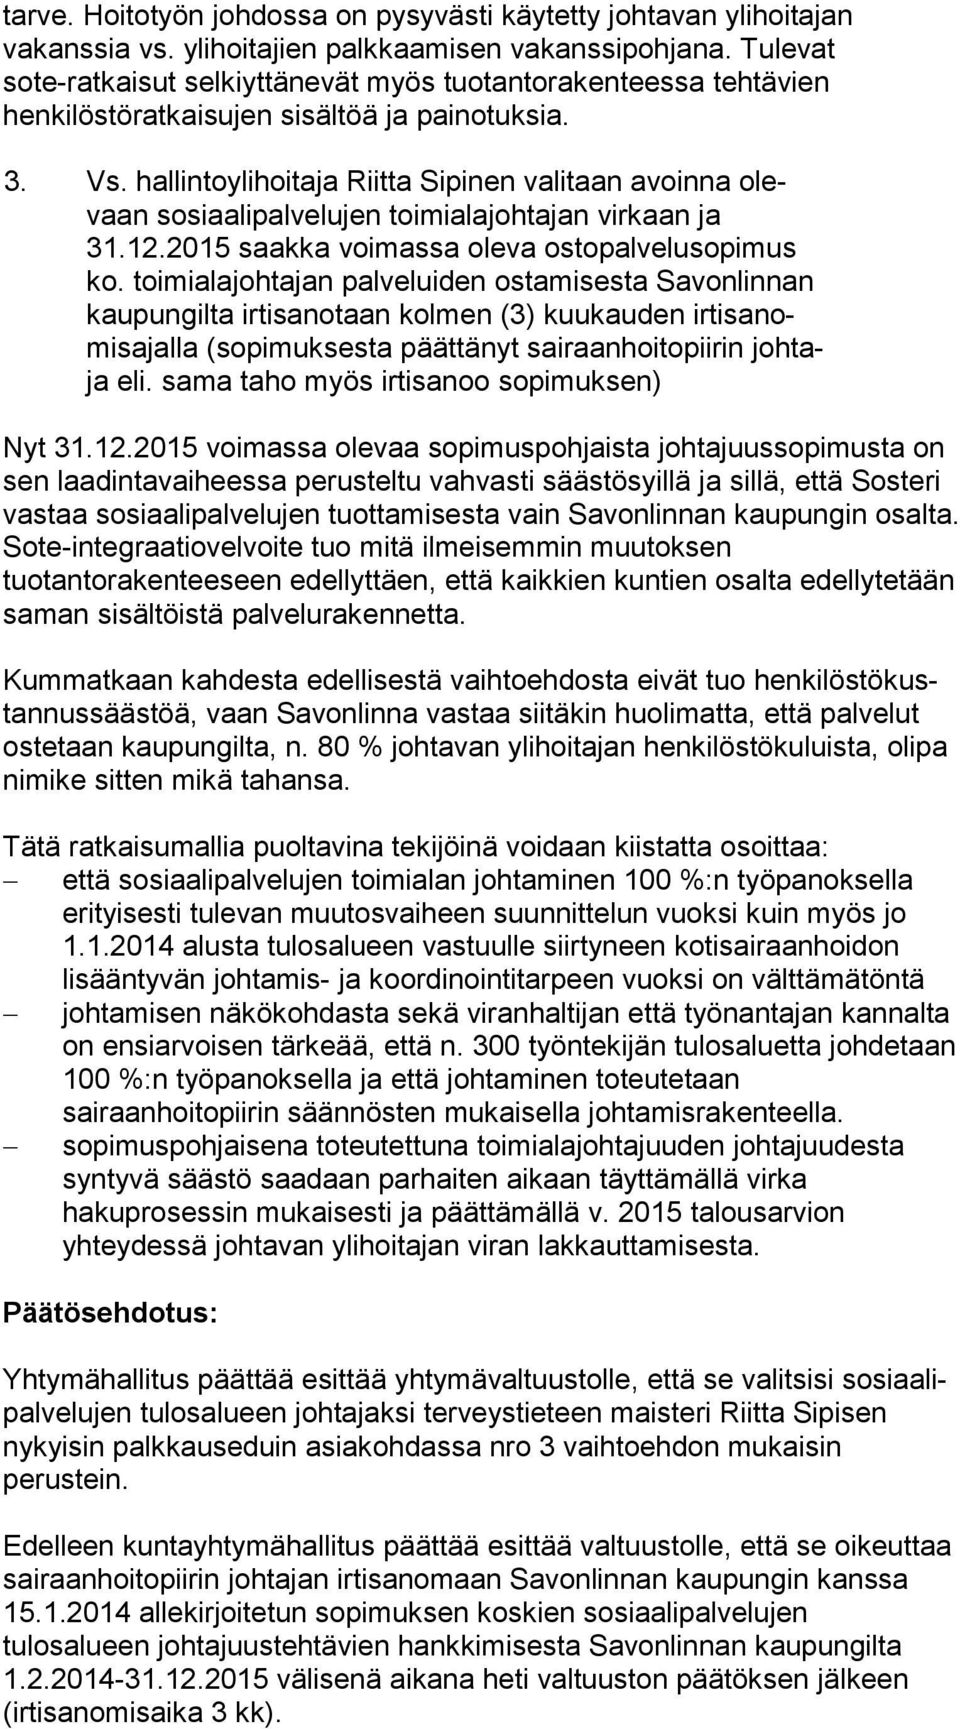 hallintoylihoitaja Riitta Sipinen valitaan avoinna olevaan sosiaalipalvelujen toimialajohtajan virkaan ja 31.12.2015 saakka voimassa oleva ostopalvelusopimus ko.